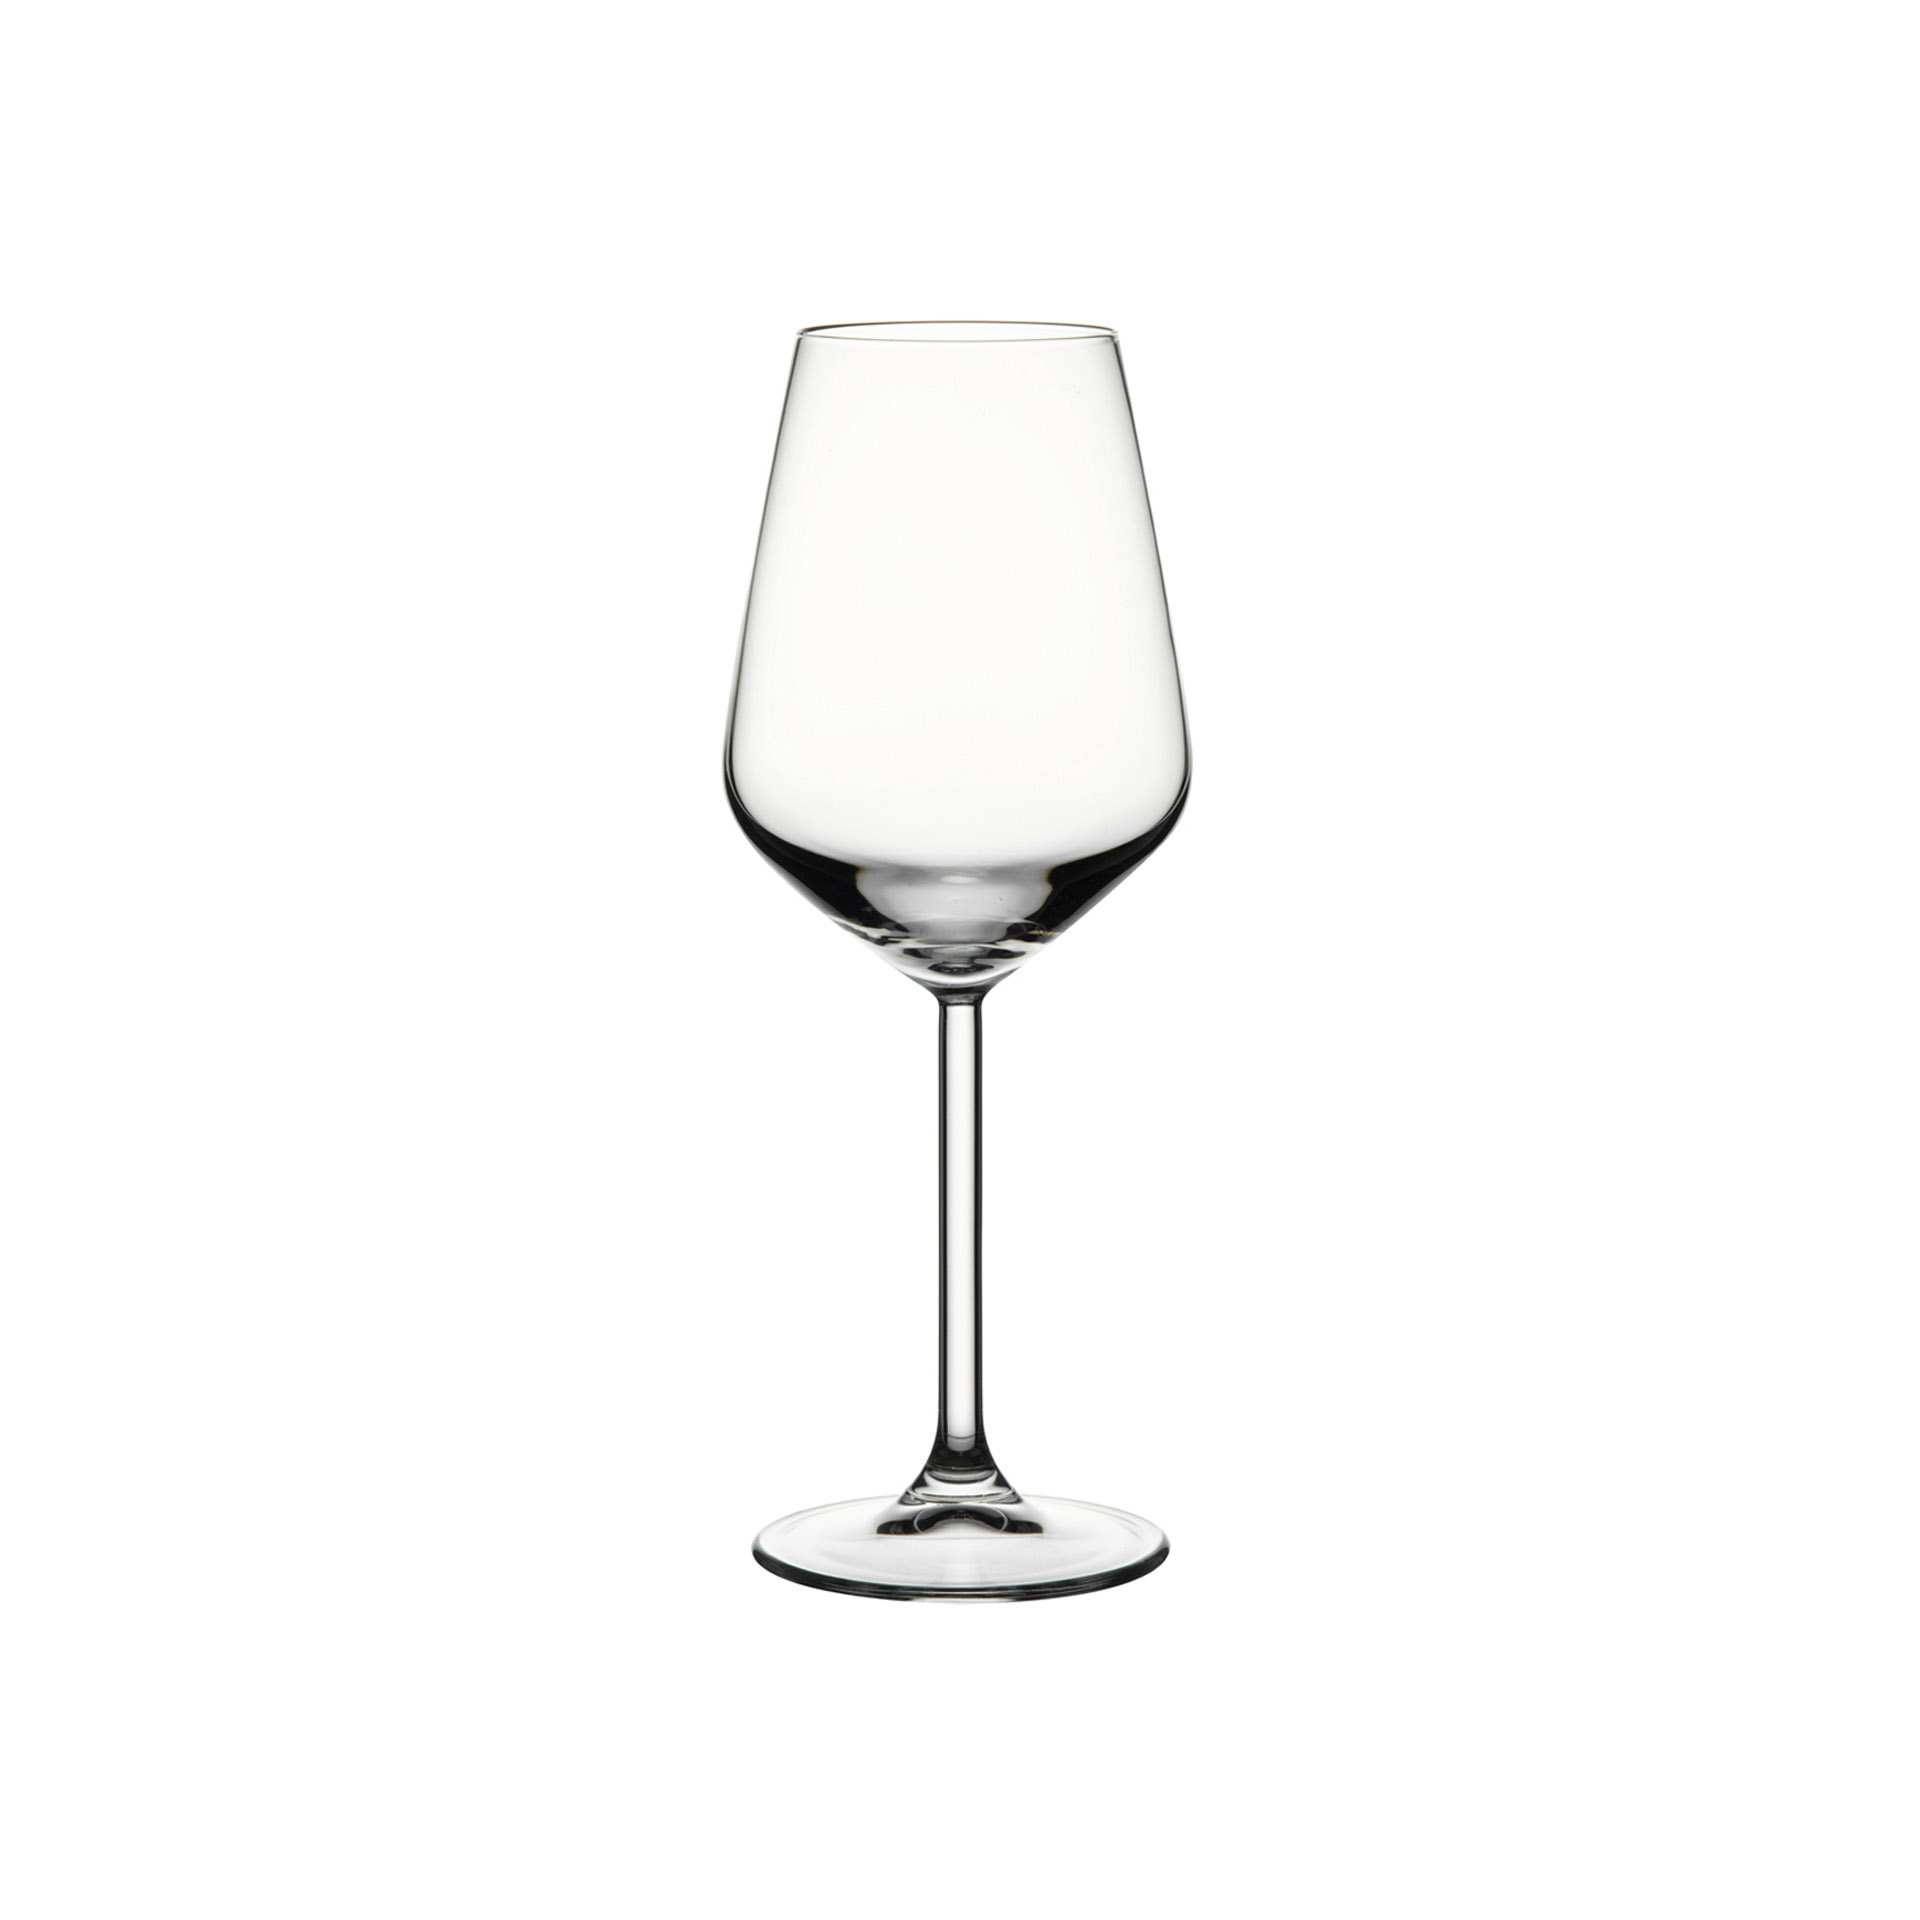 Weinglas - Set á 6 Stück - Serie Allegra - Höhe 21,7 cm - Ø oben / unten 8,35 / 7,5 cm - Inhalt 0,35 l - Glas - 440080-A